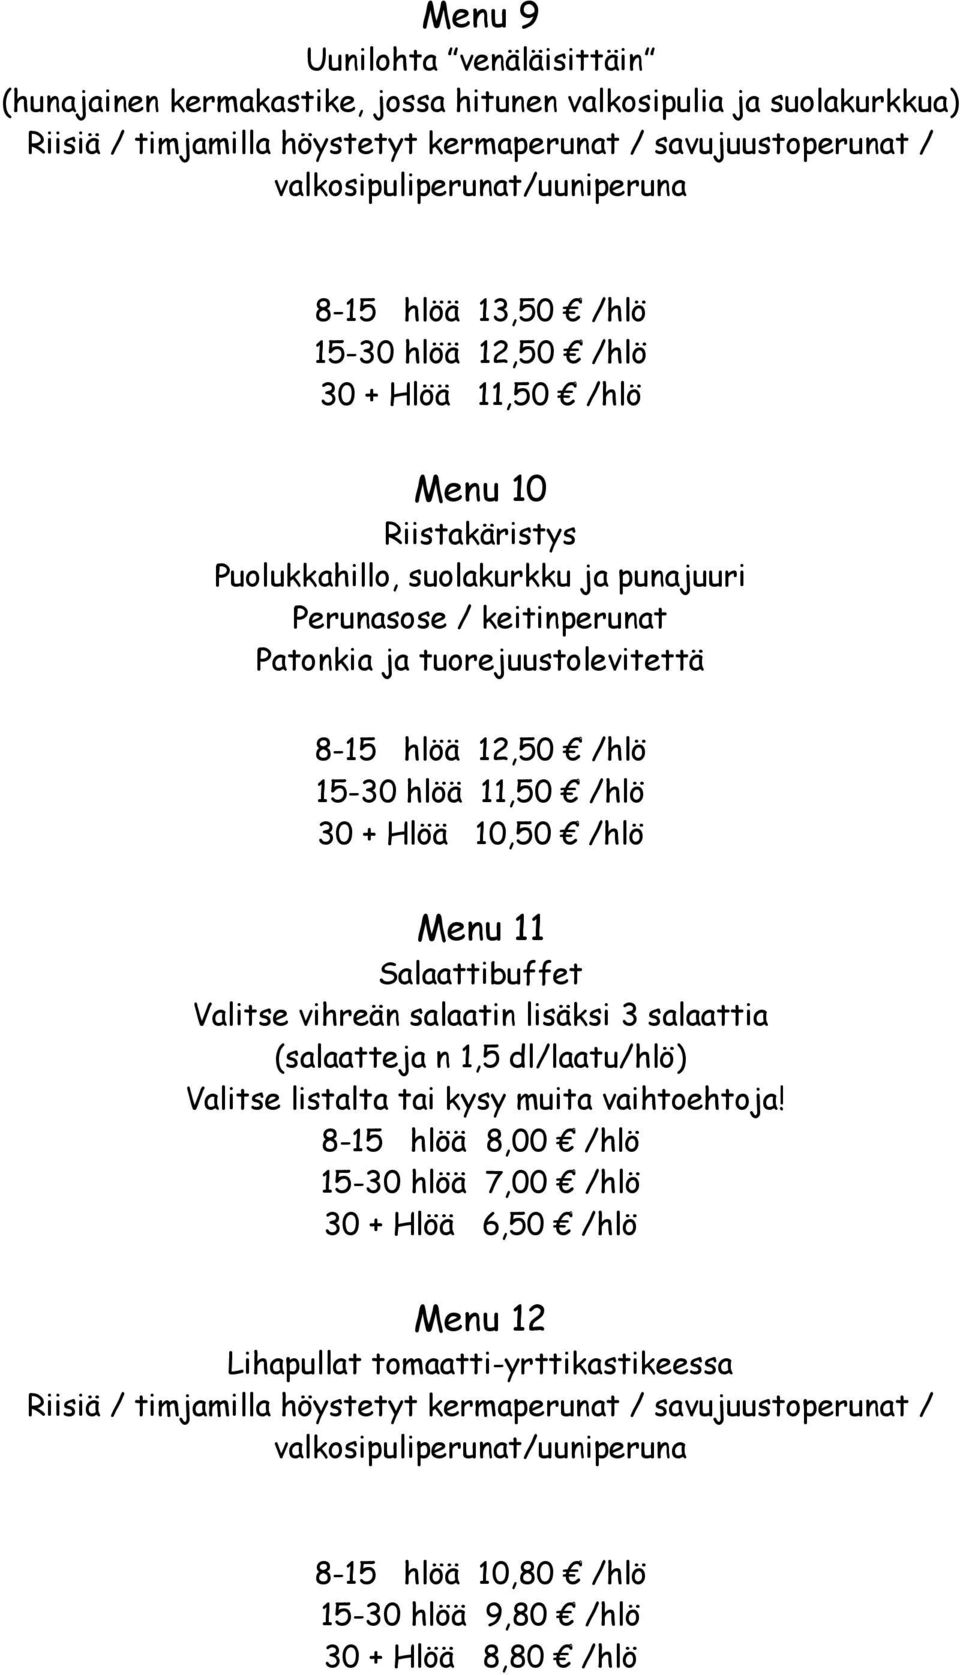 30 + Hlöä 10,50 /hlö Menu 11 Salaattibuffet Valitse vihreän salaatin lisäksi 3 salaattia (salaatteja n 1,5 dl/laatu/hlö) Valitse listalta tai kysy muita vaihtoehtoja!